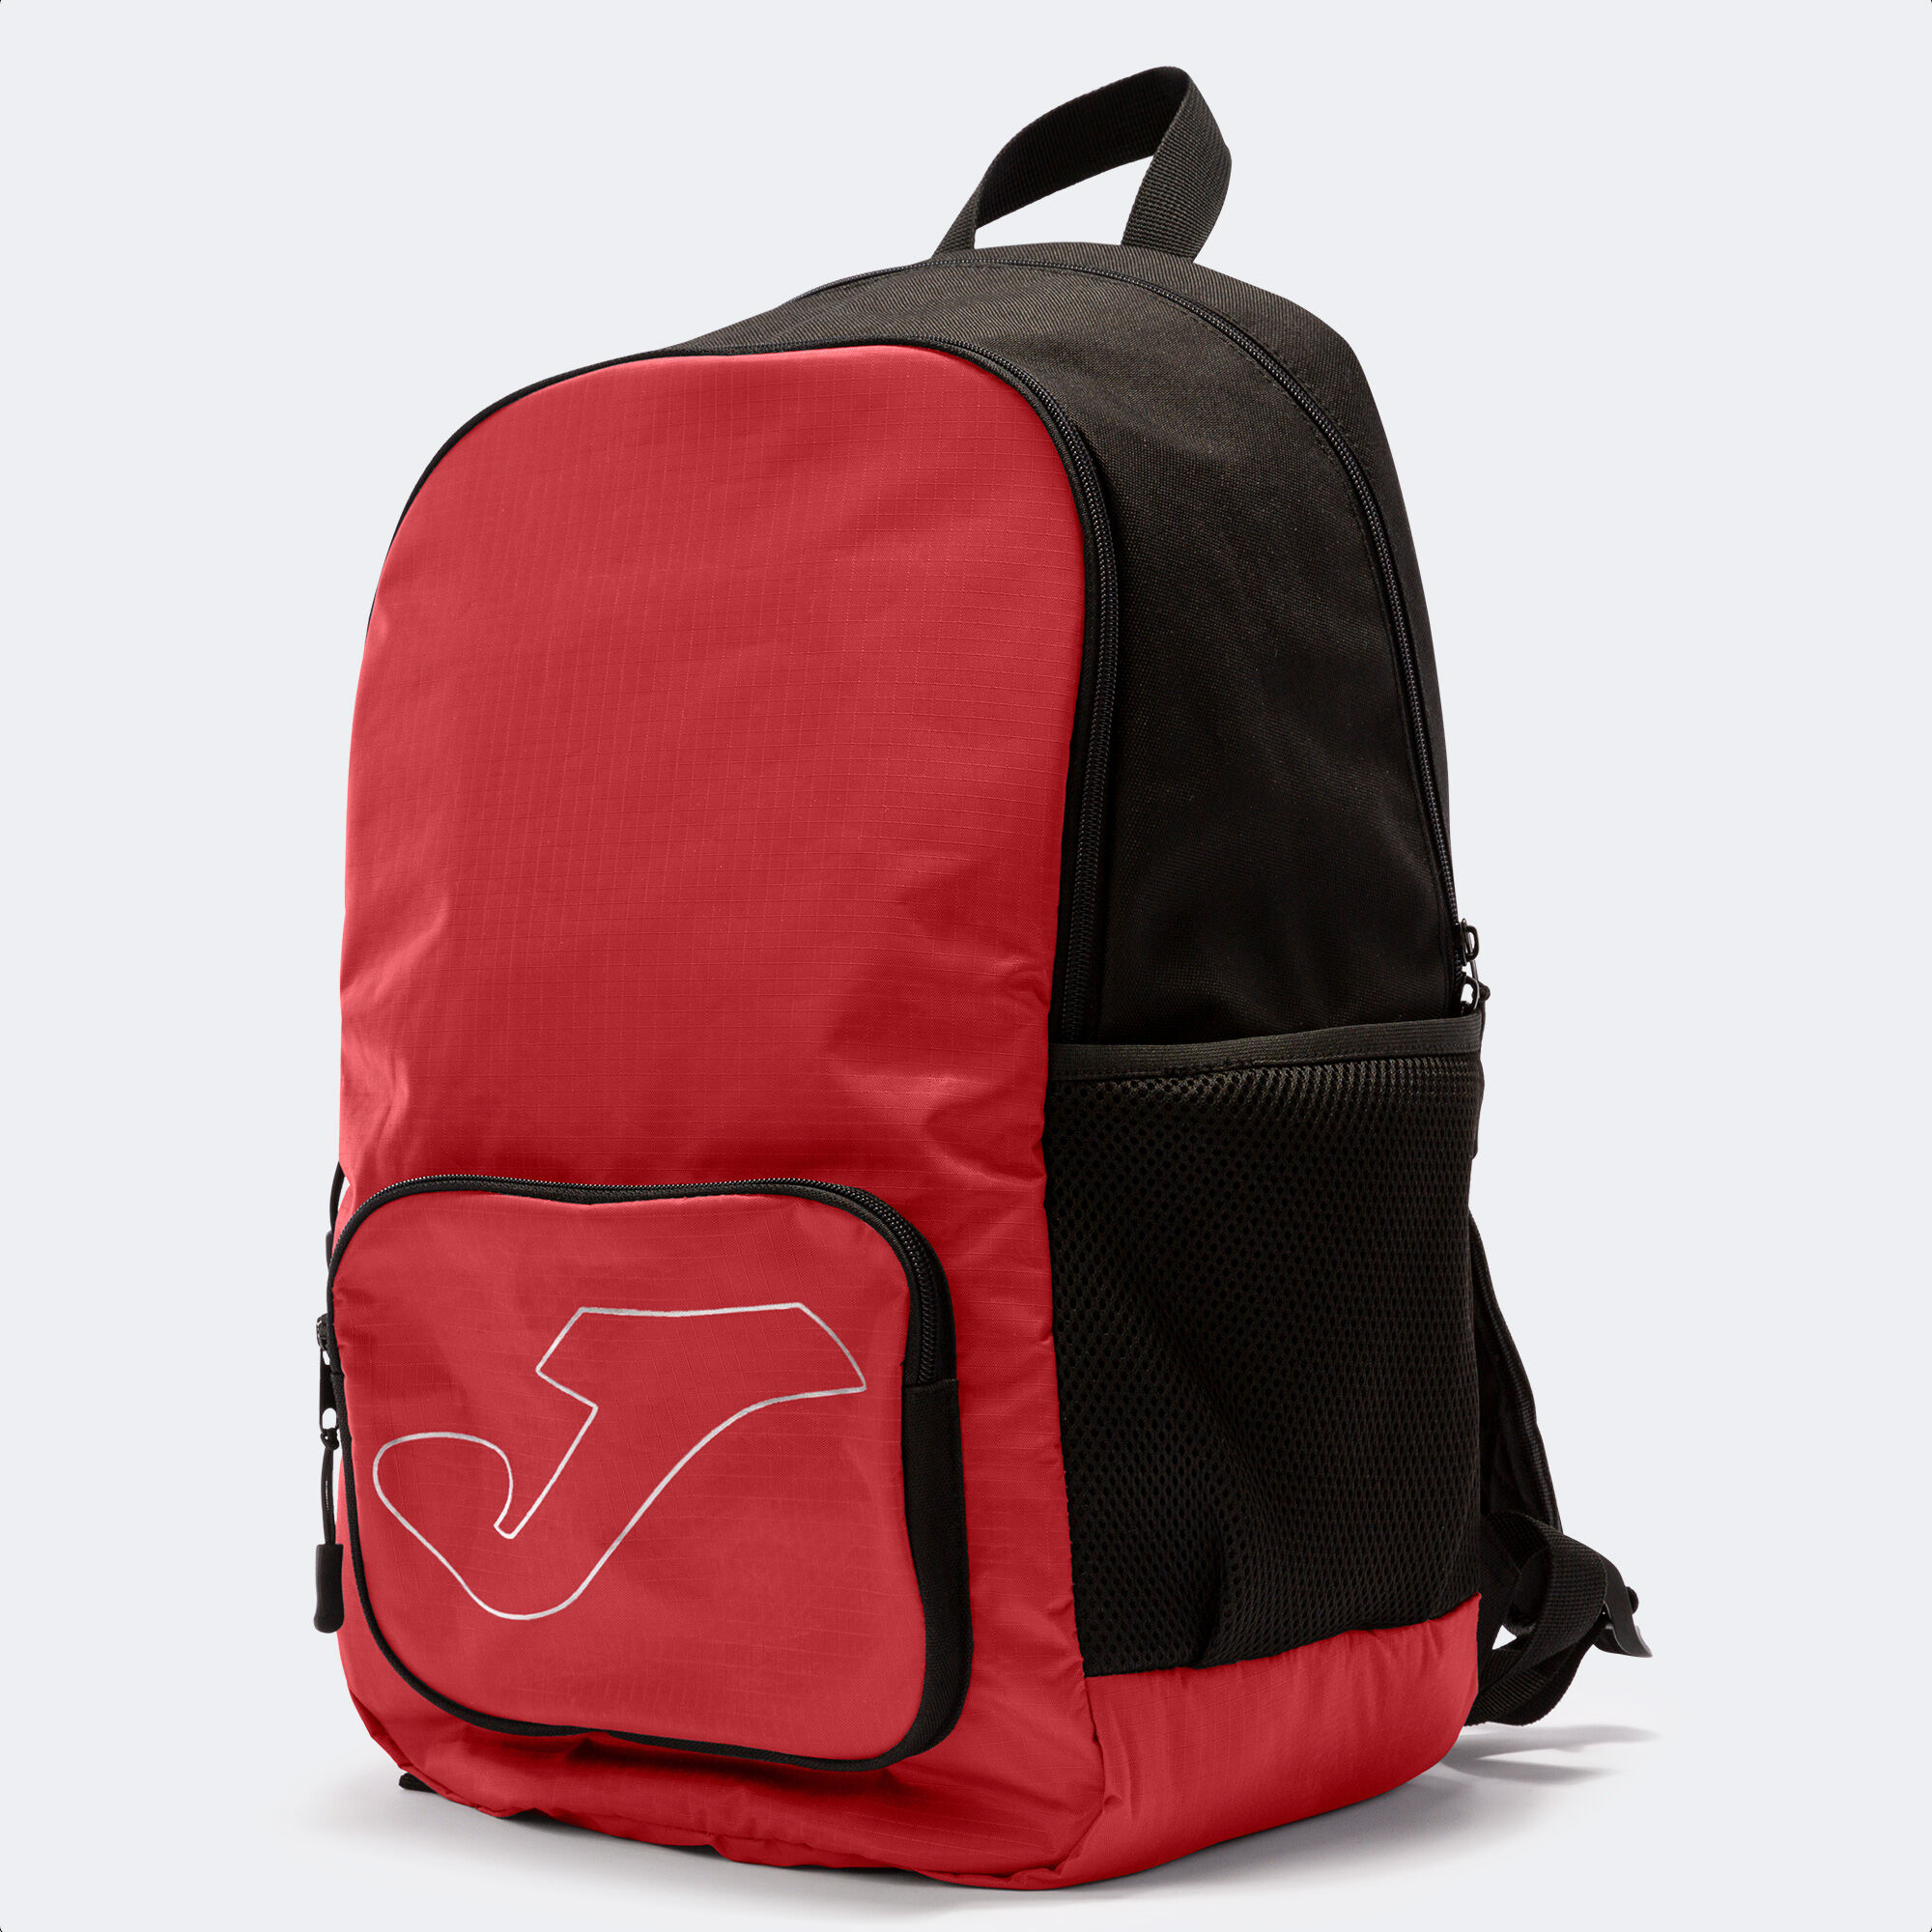 Backpack - shoe bag Academy black red